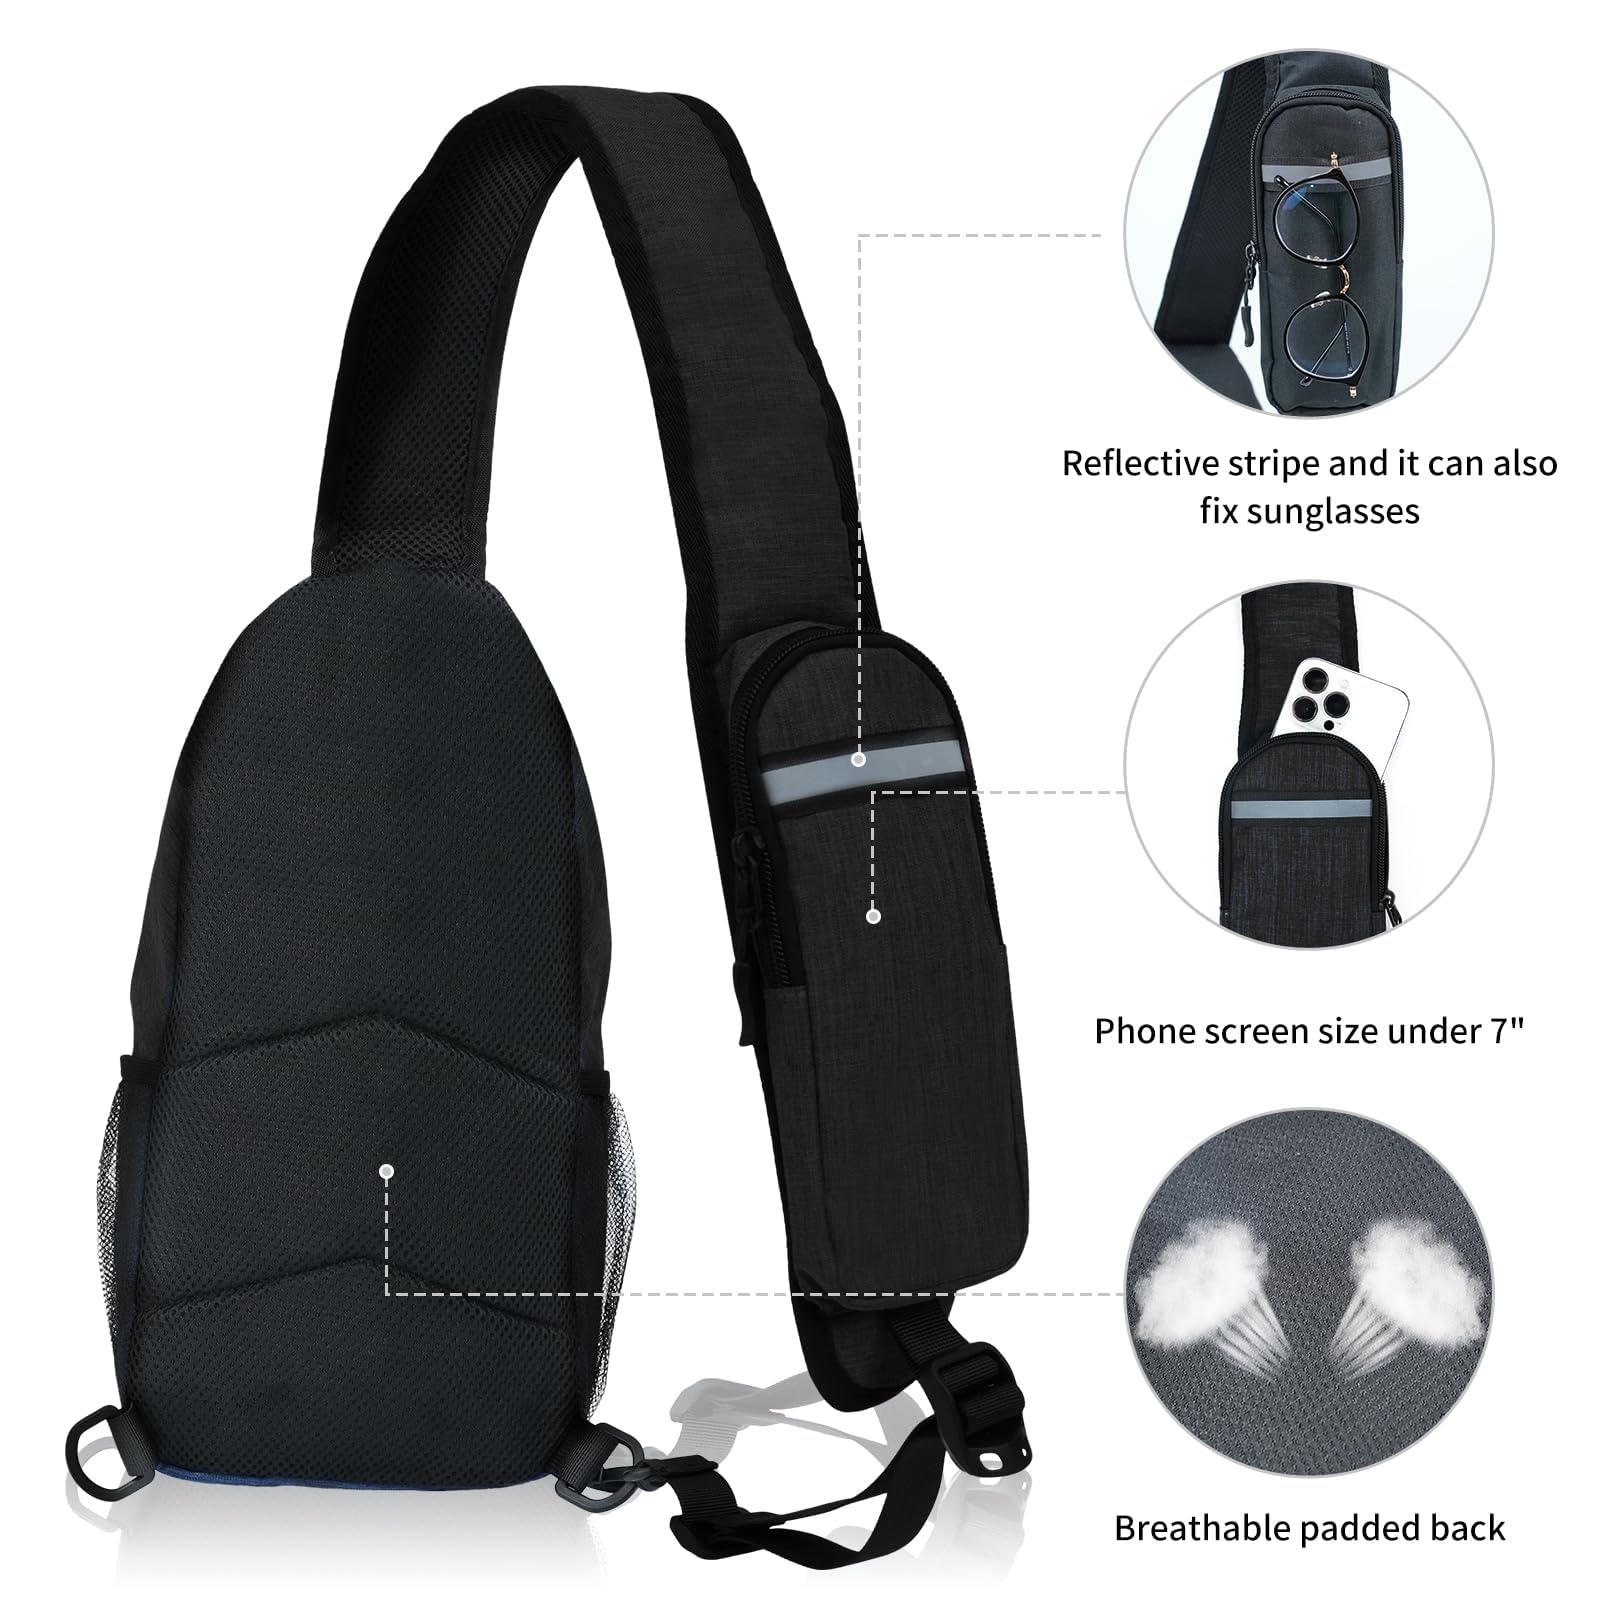 Sling-Bag Crossbody-Bag Women-Men Backpack-Daypack - Hiking Chest Travel with Water Bottle Pocket Portable Hiking Daypacks for Women Black